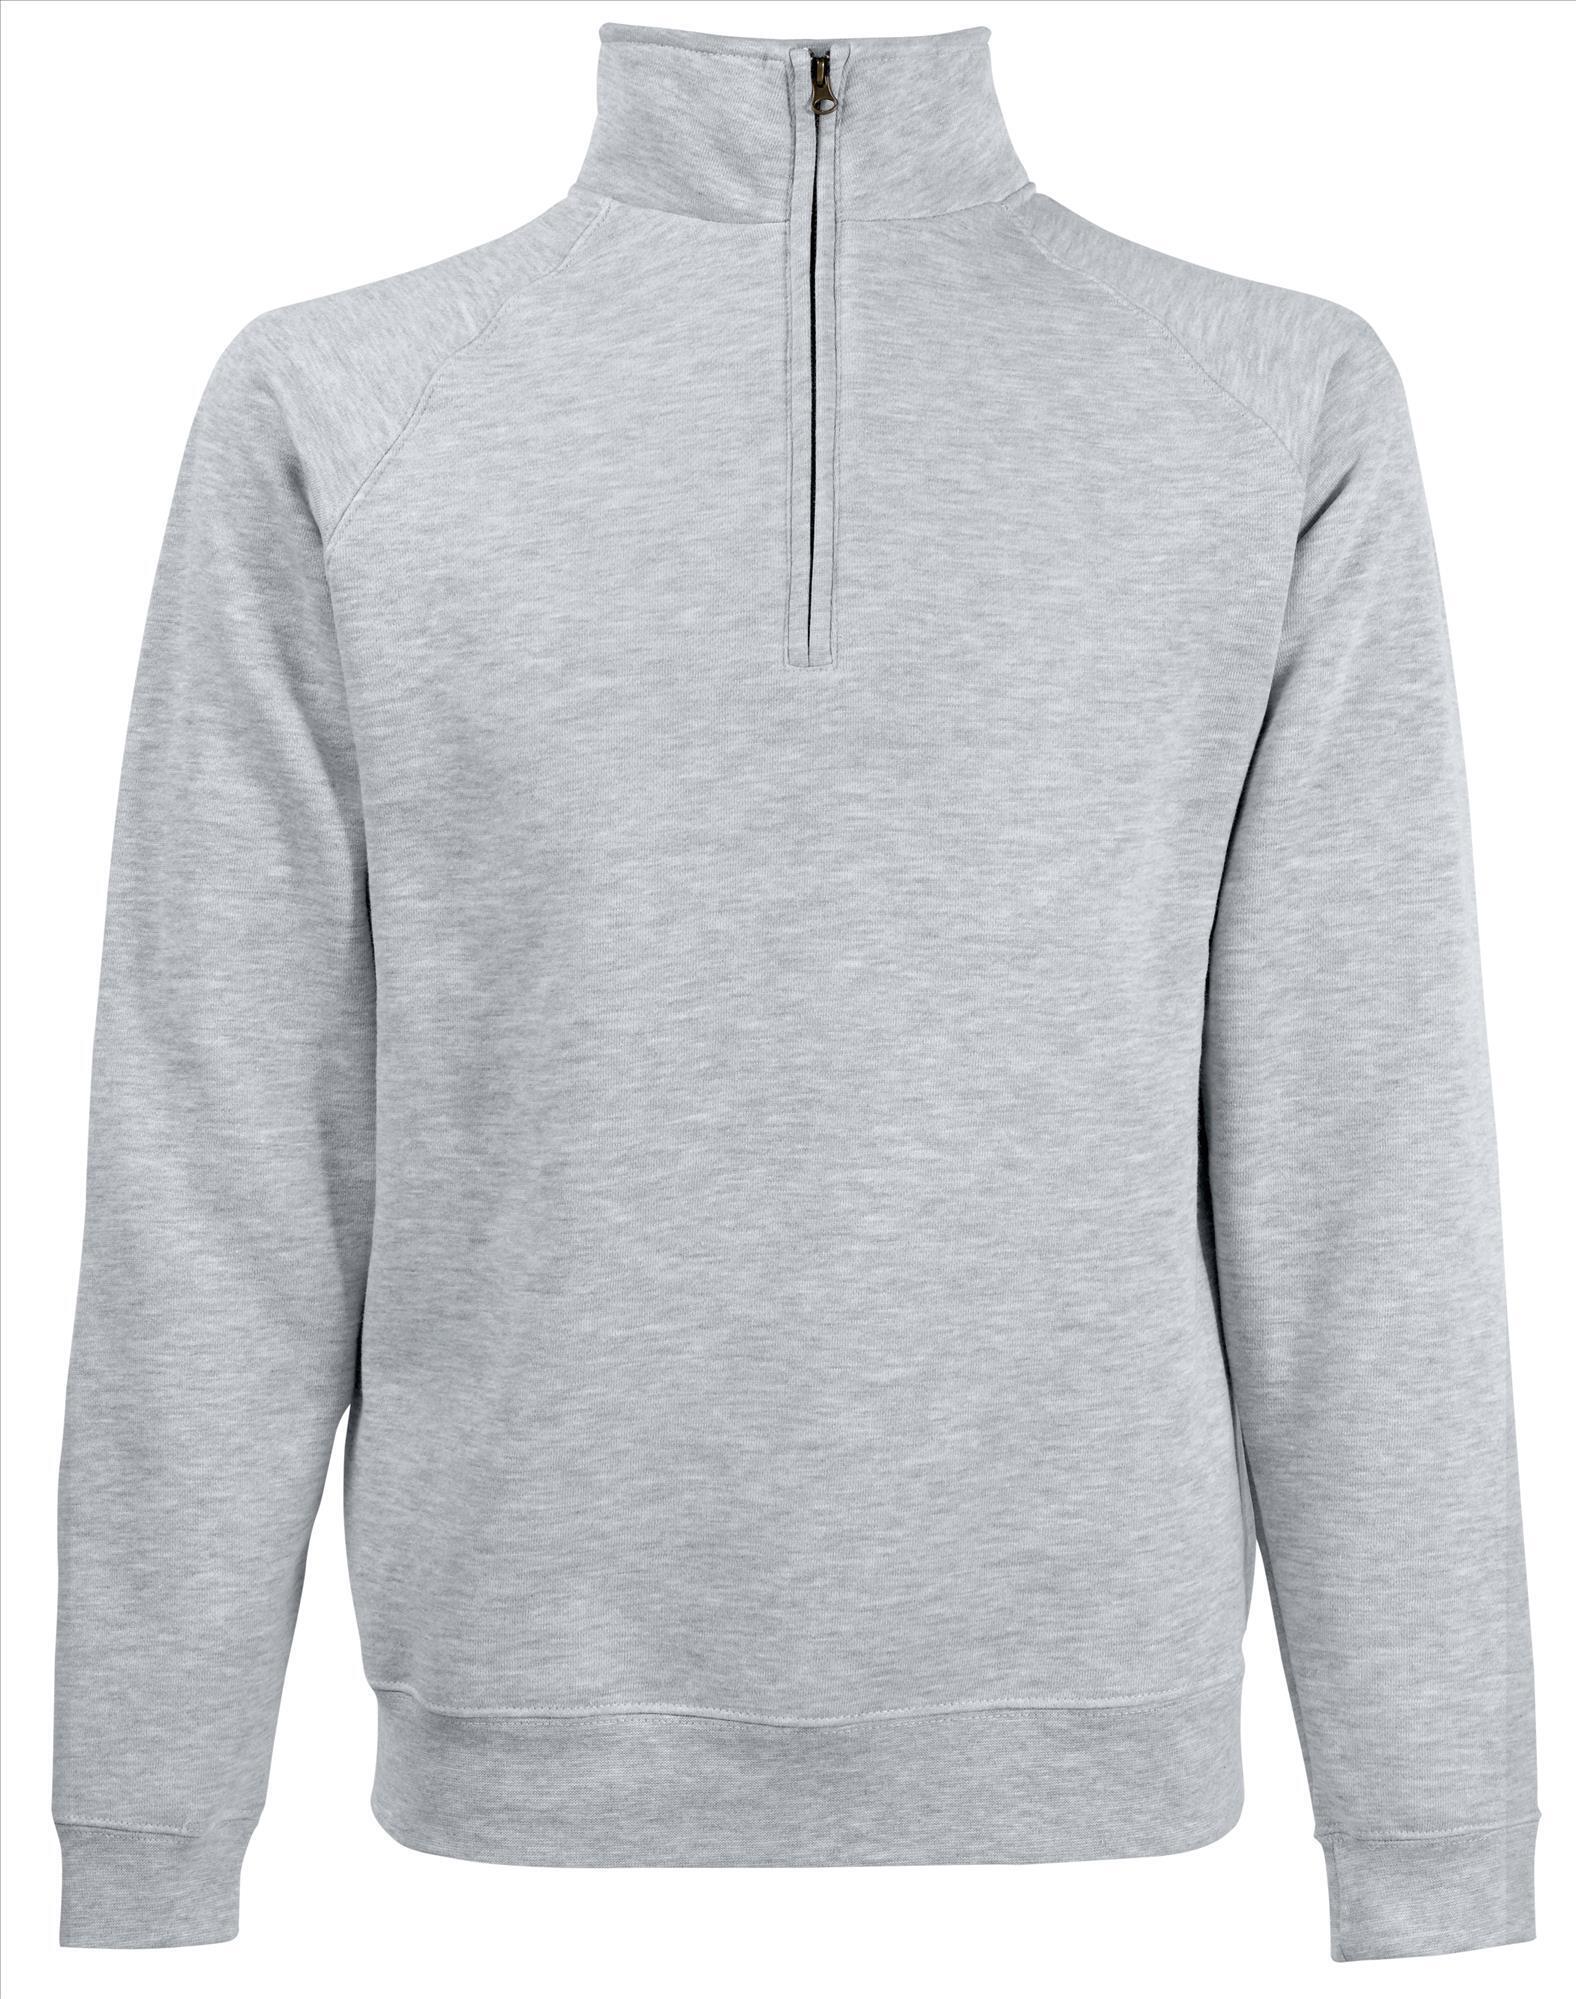 Sweater voor hem in de kleur heide grijs te personaliseren